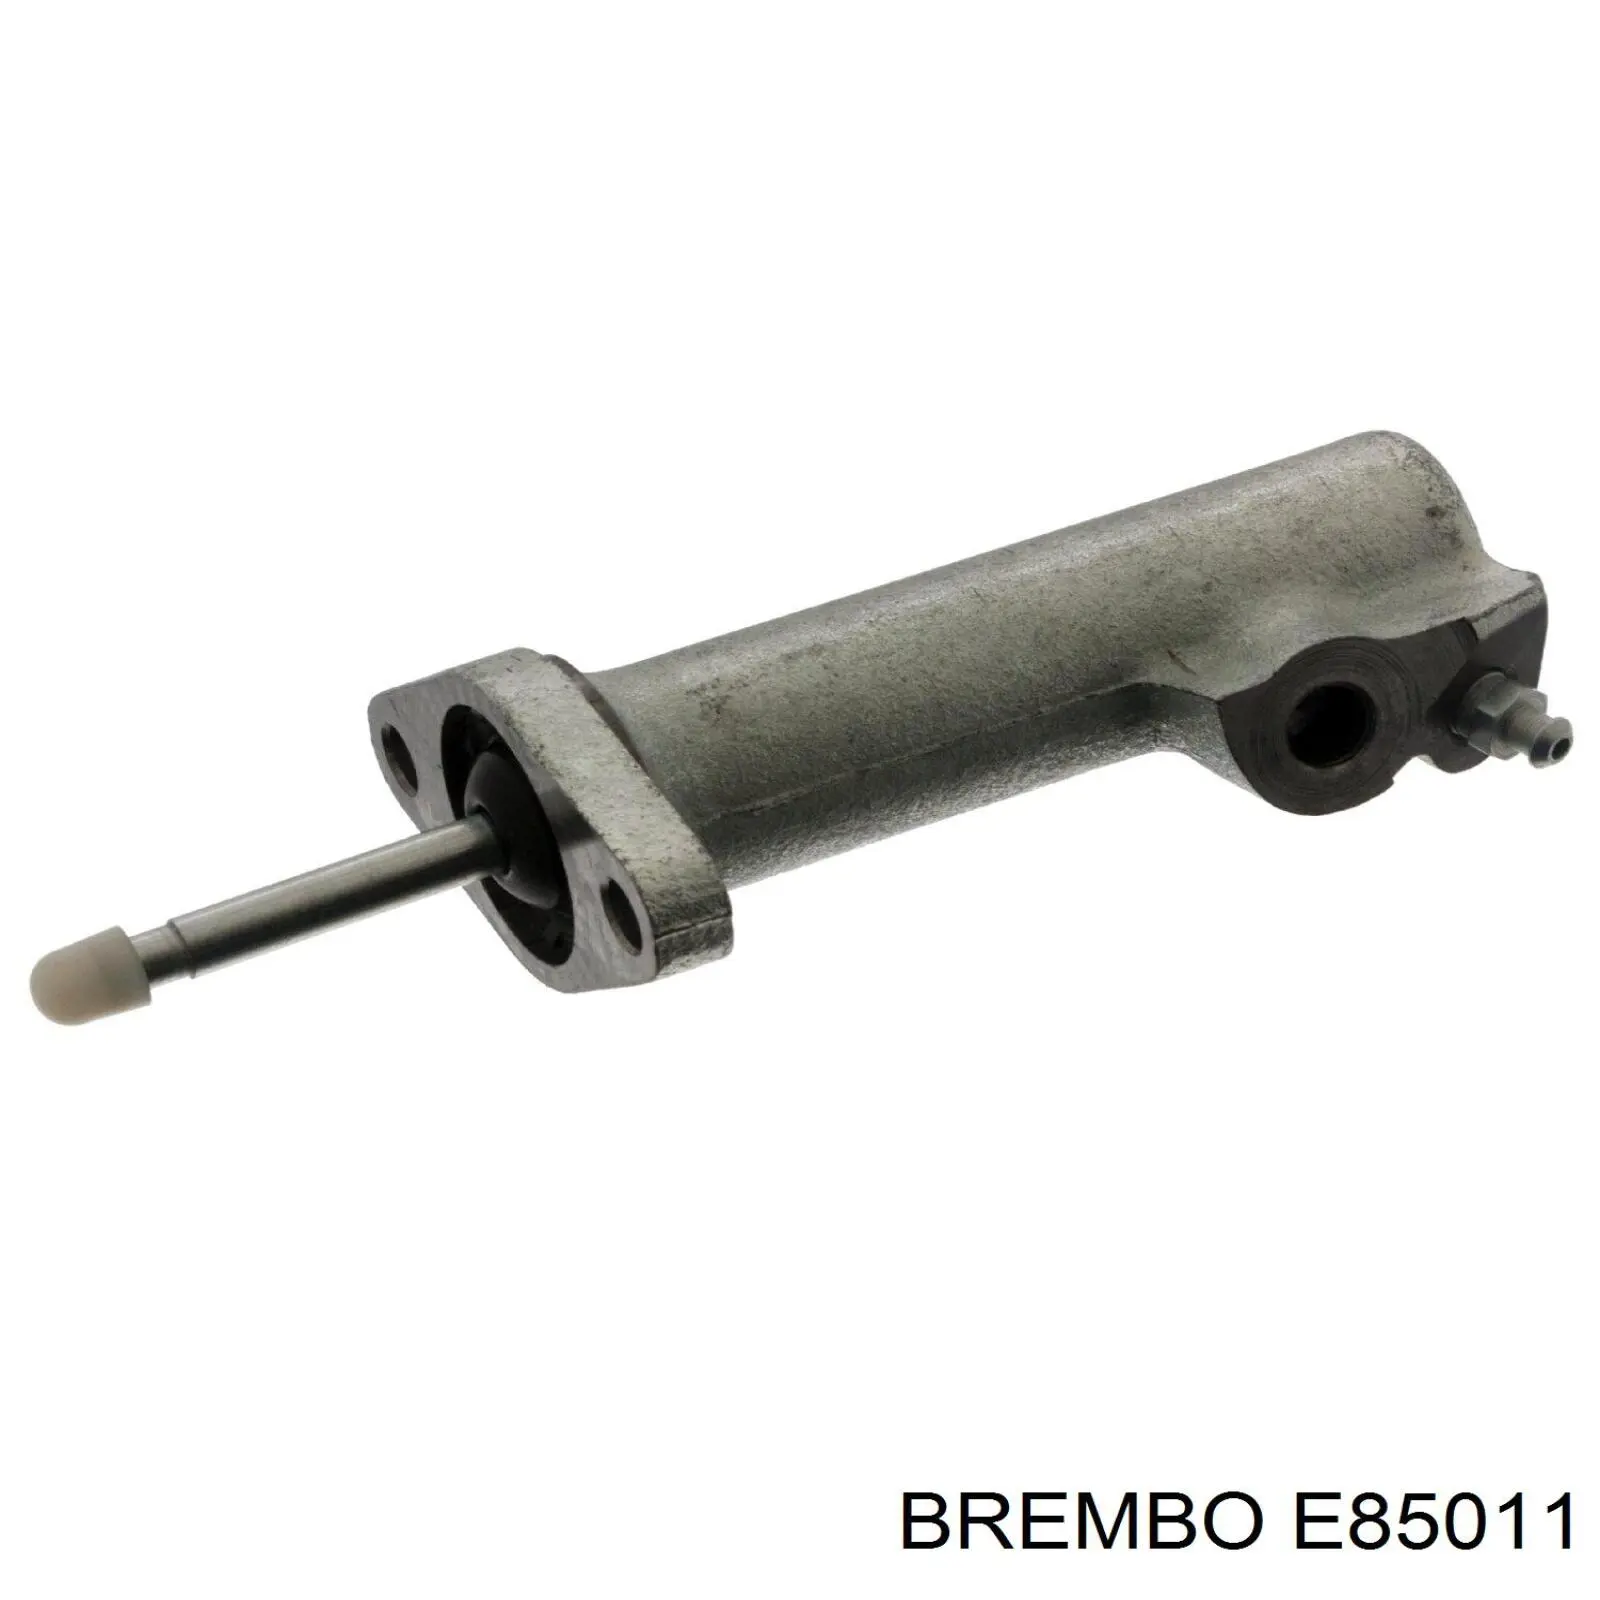 E85011 Brembo bombin de embrague